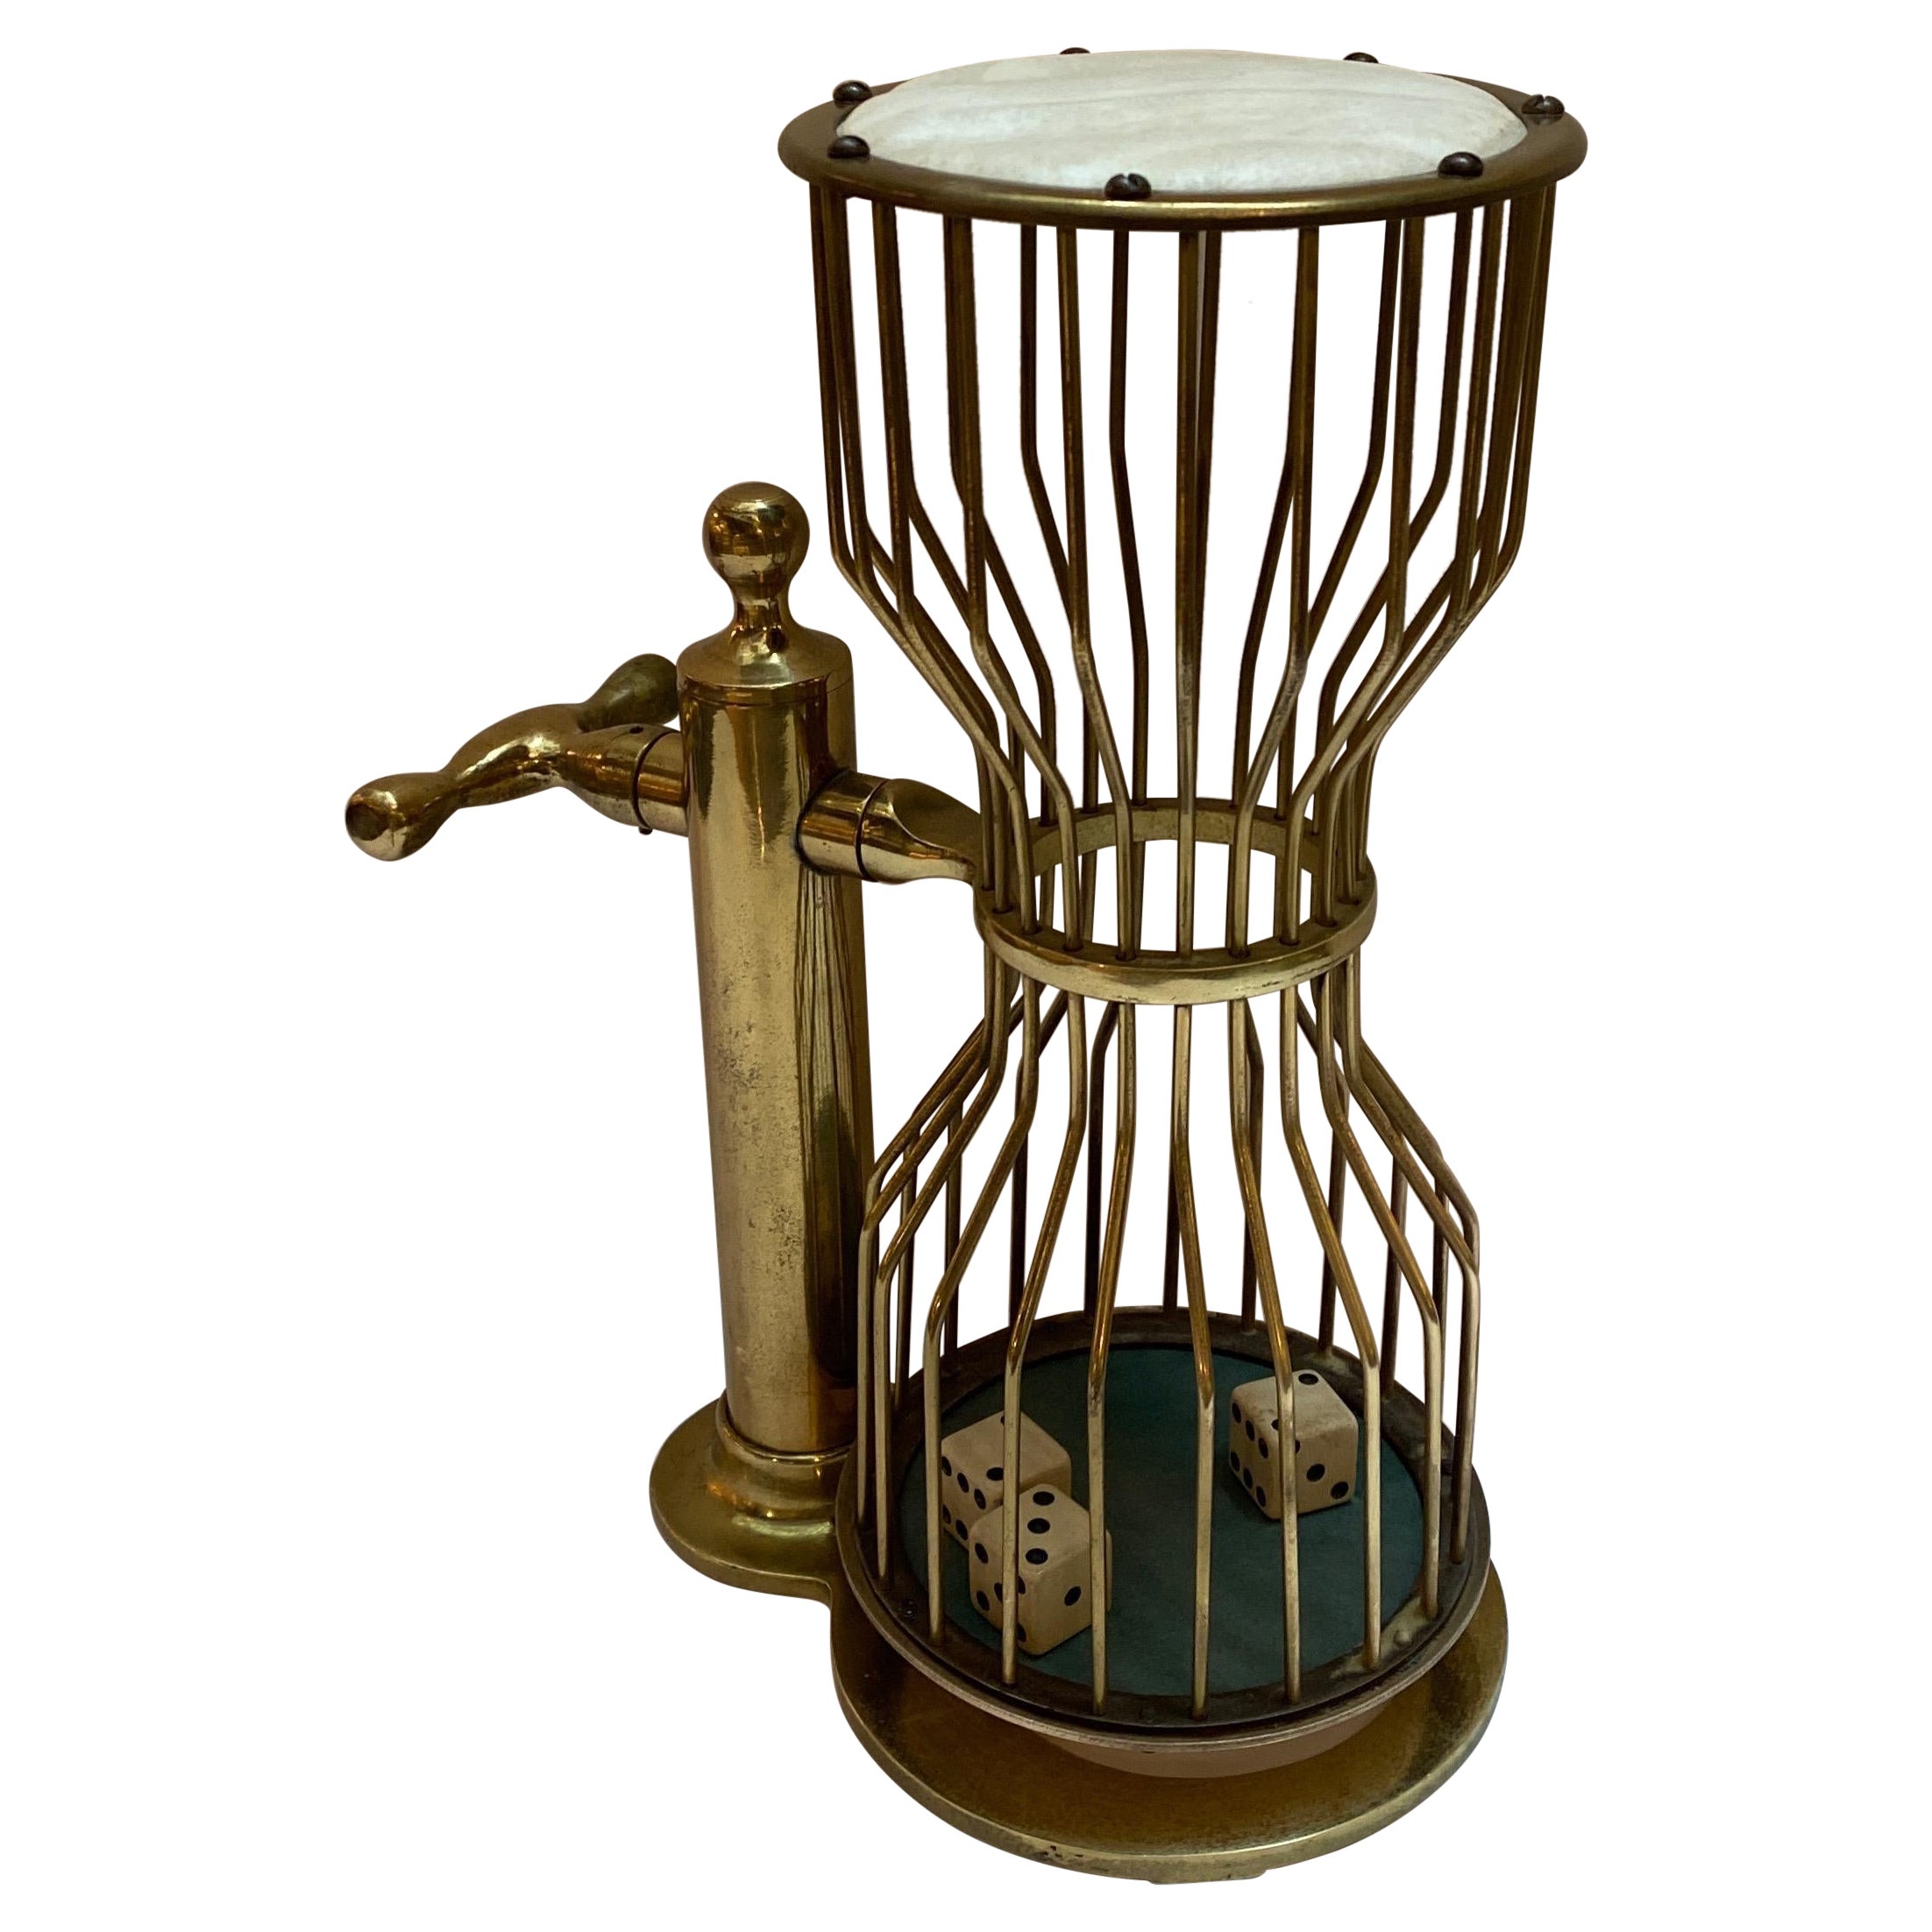 1930s Brass Chuck-A-luck Gaming Instrument